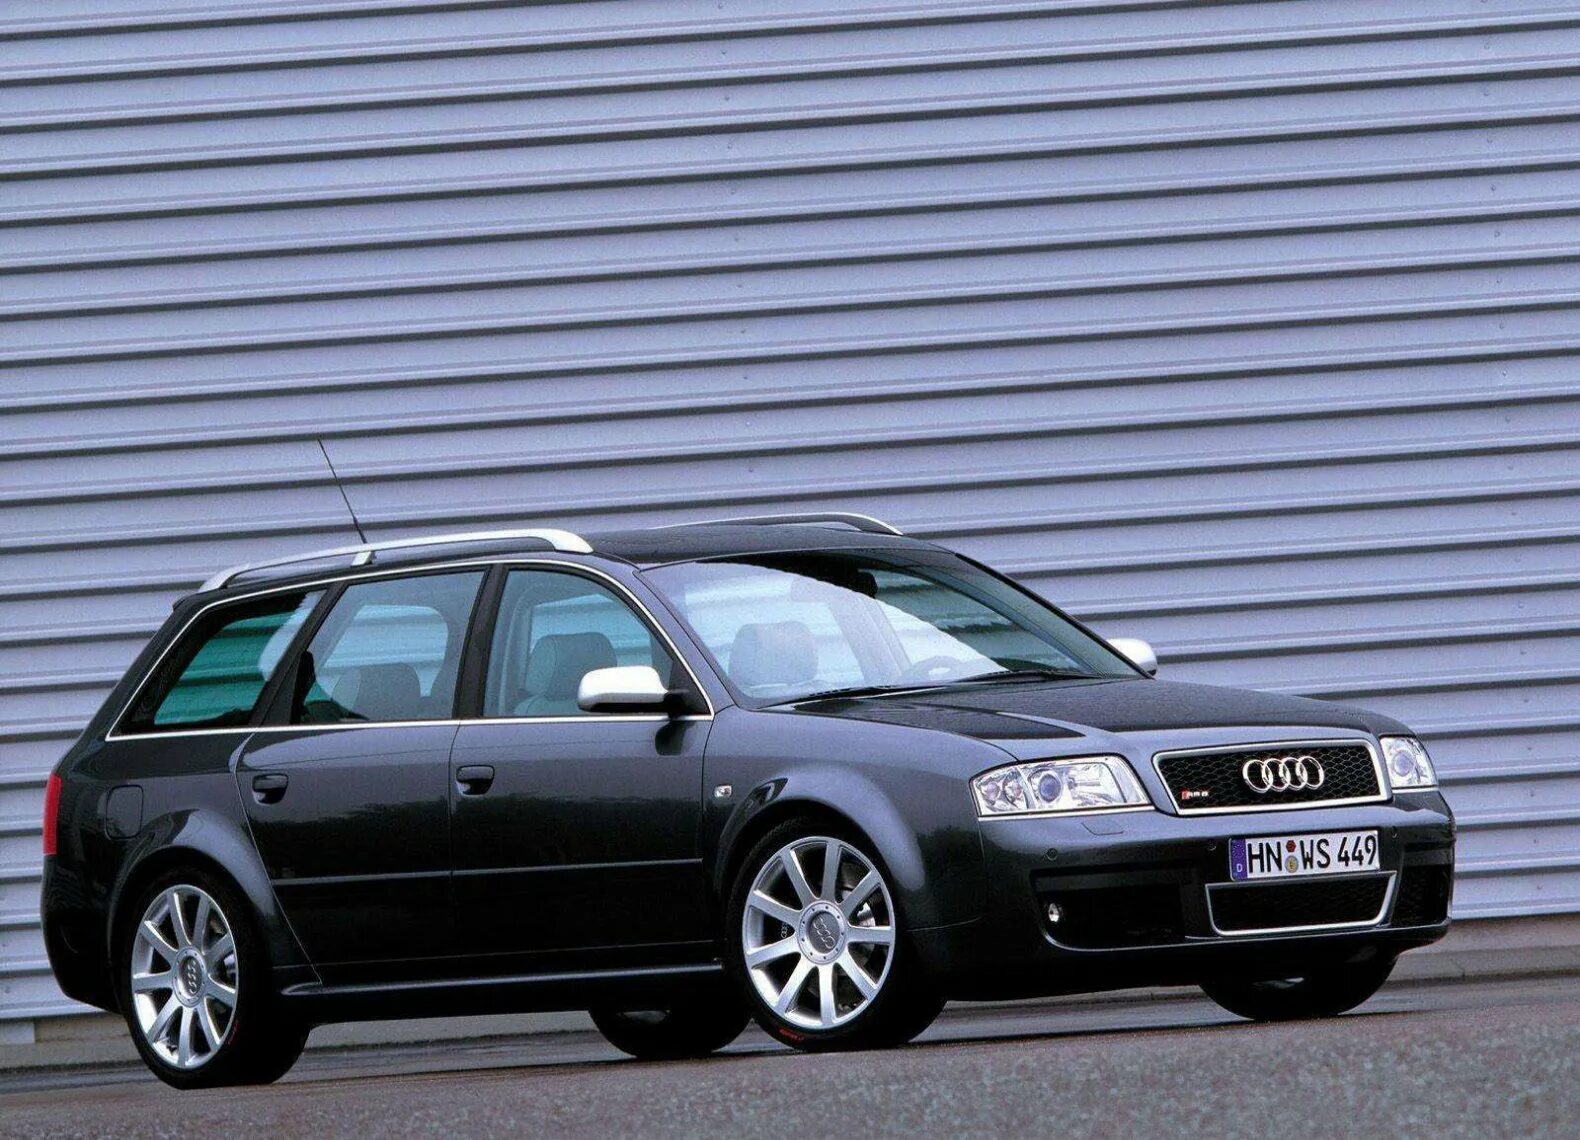 Audi a6 c5 универсал. Audi rs6 2002. Audi a6 c5 Авант. Ауди рс6 с5 универсал. Ауди универсал 2002